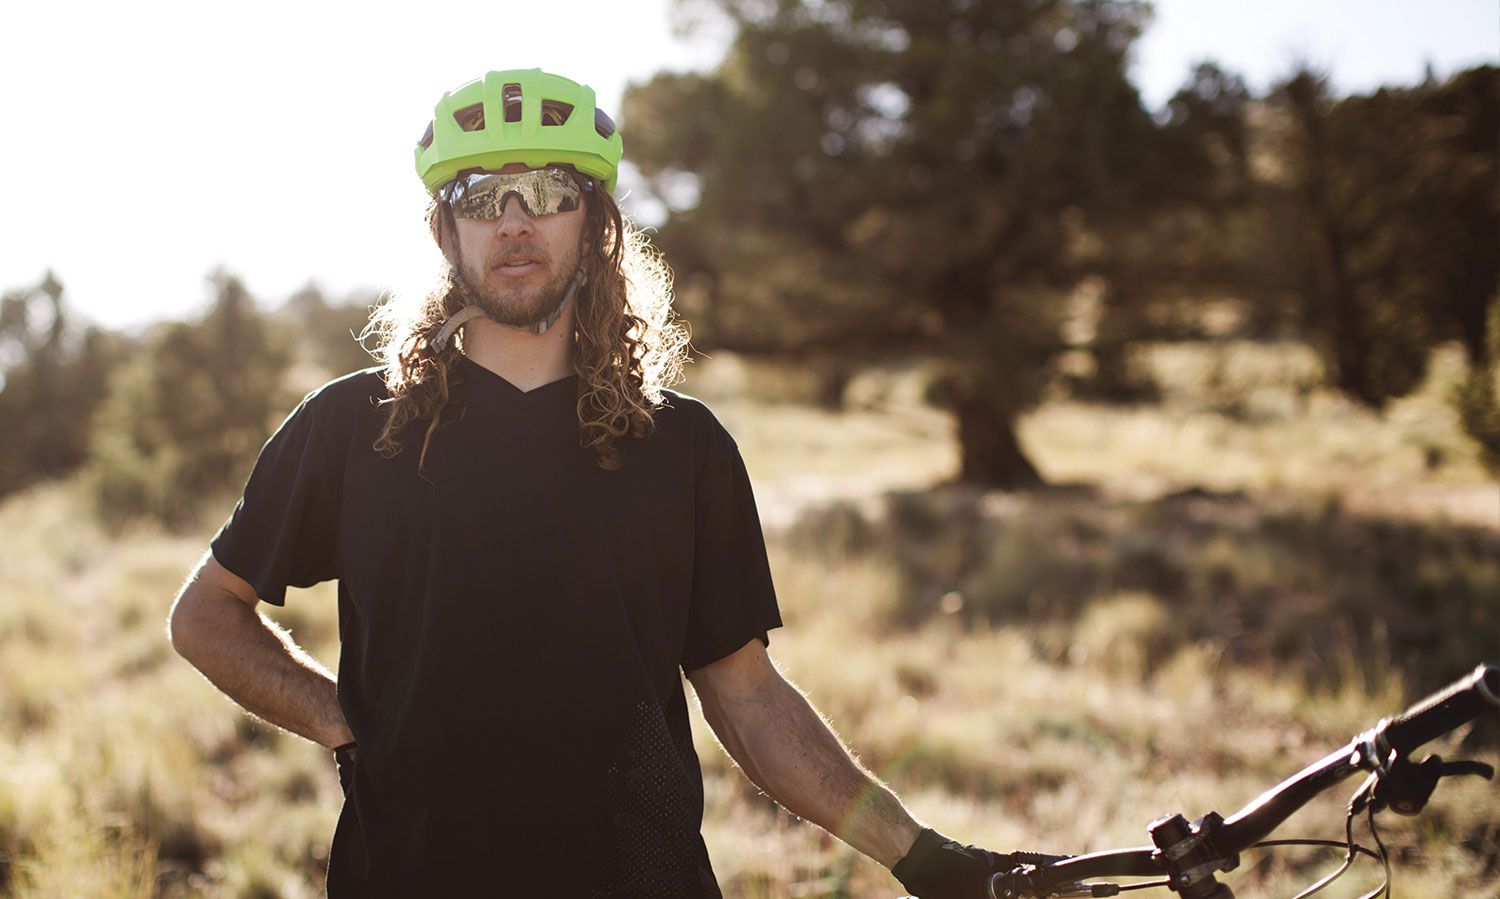 smith route bike helmet